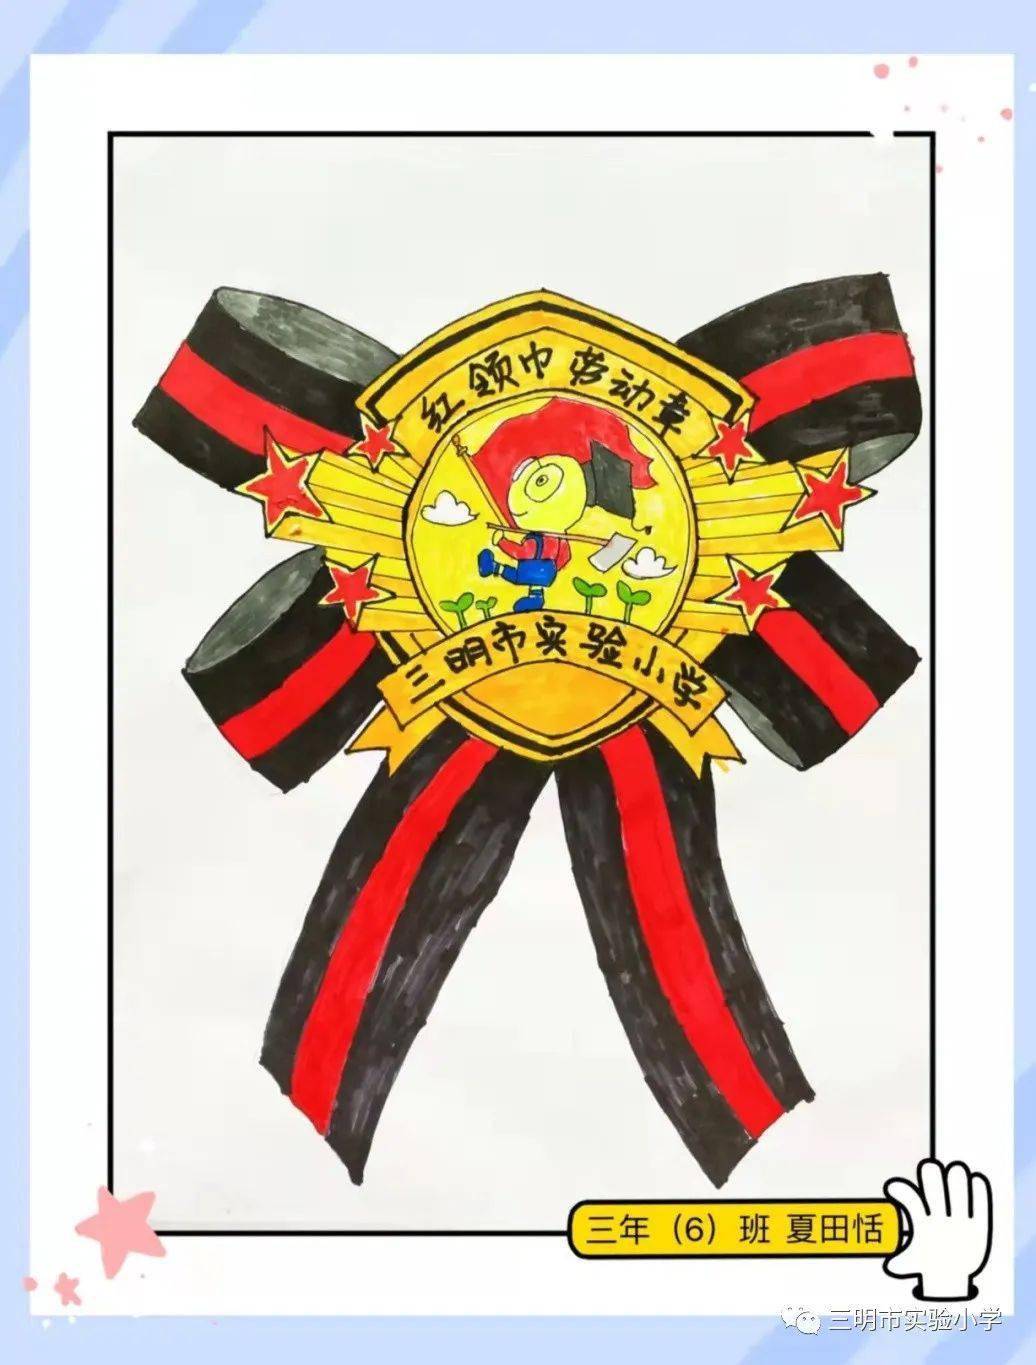 三明市实验小学少先队红领巾奖章特色章之劳动章设计成果展示